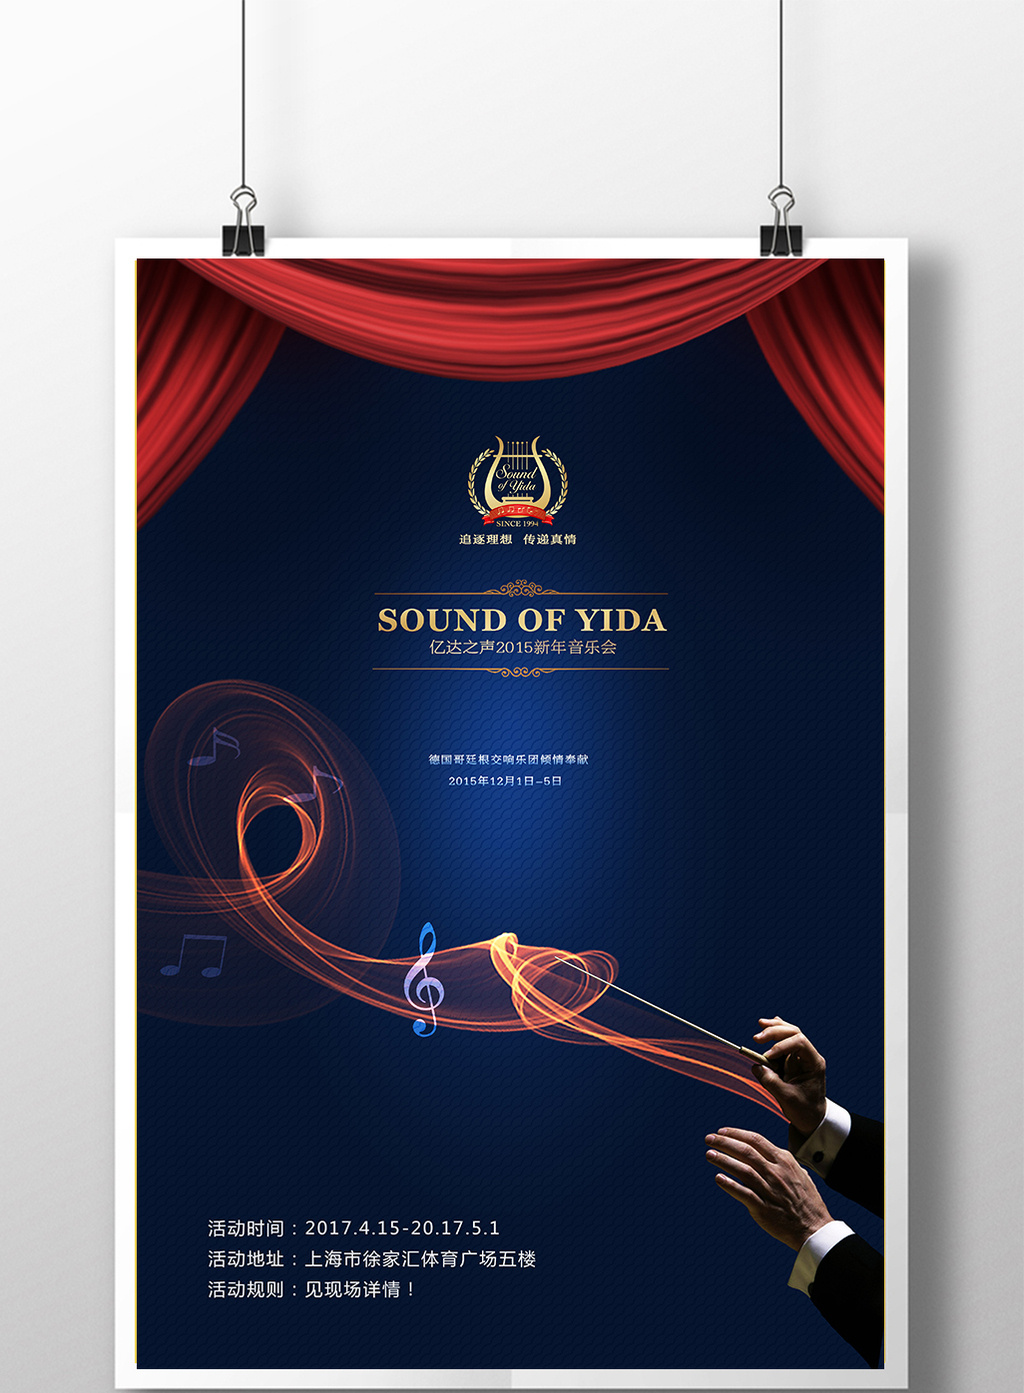 创意音乐会展开海报模板免费下载 _广告设计图片设计